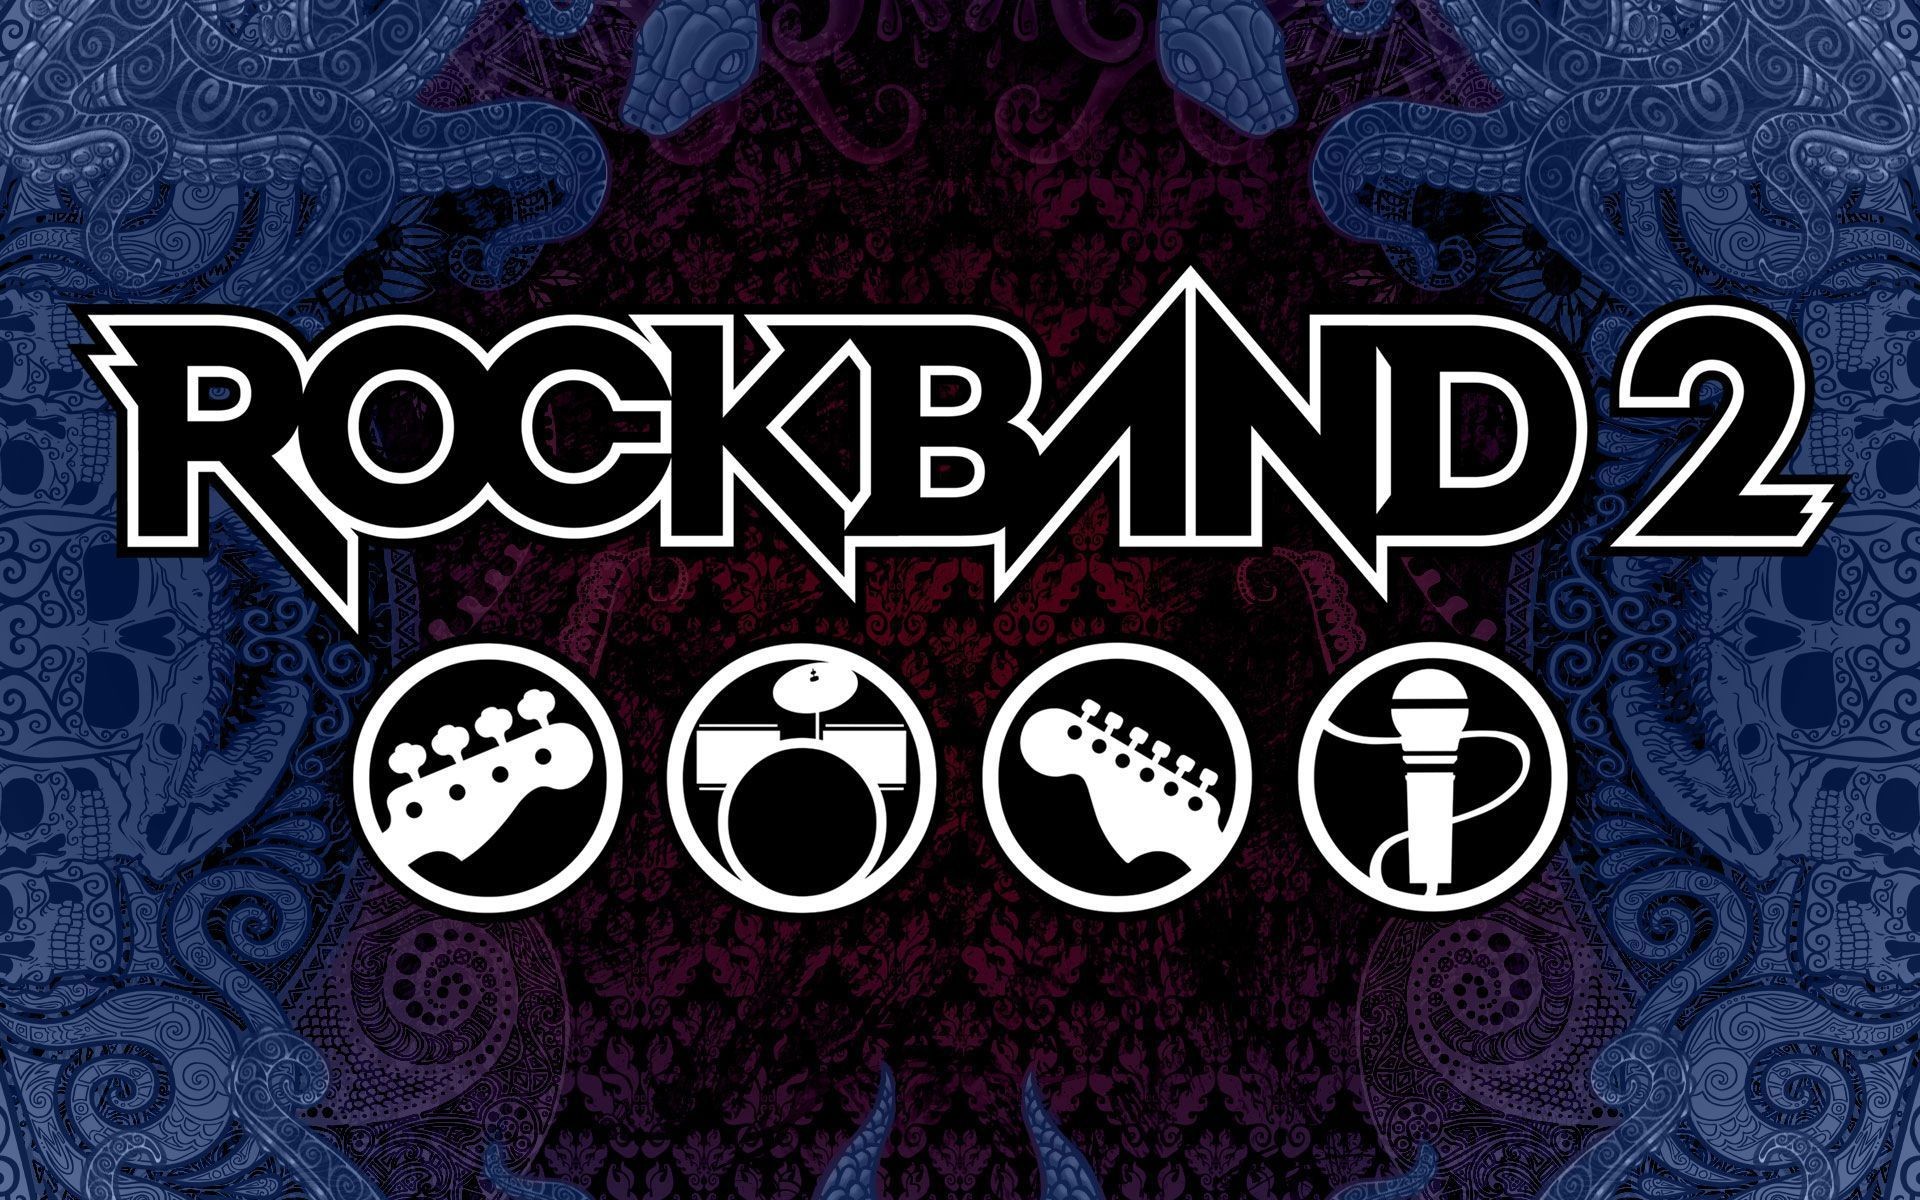 Band Desktop Backgrounds ·①